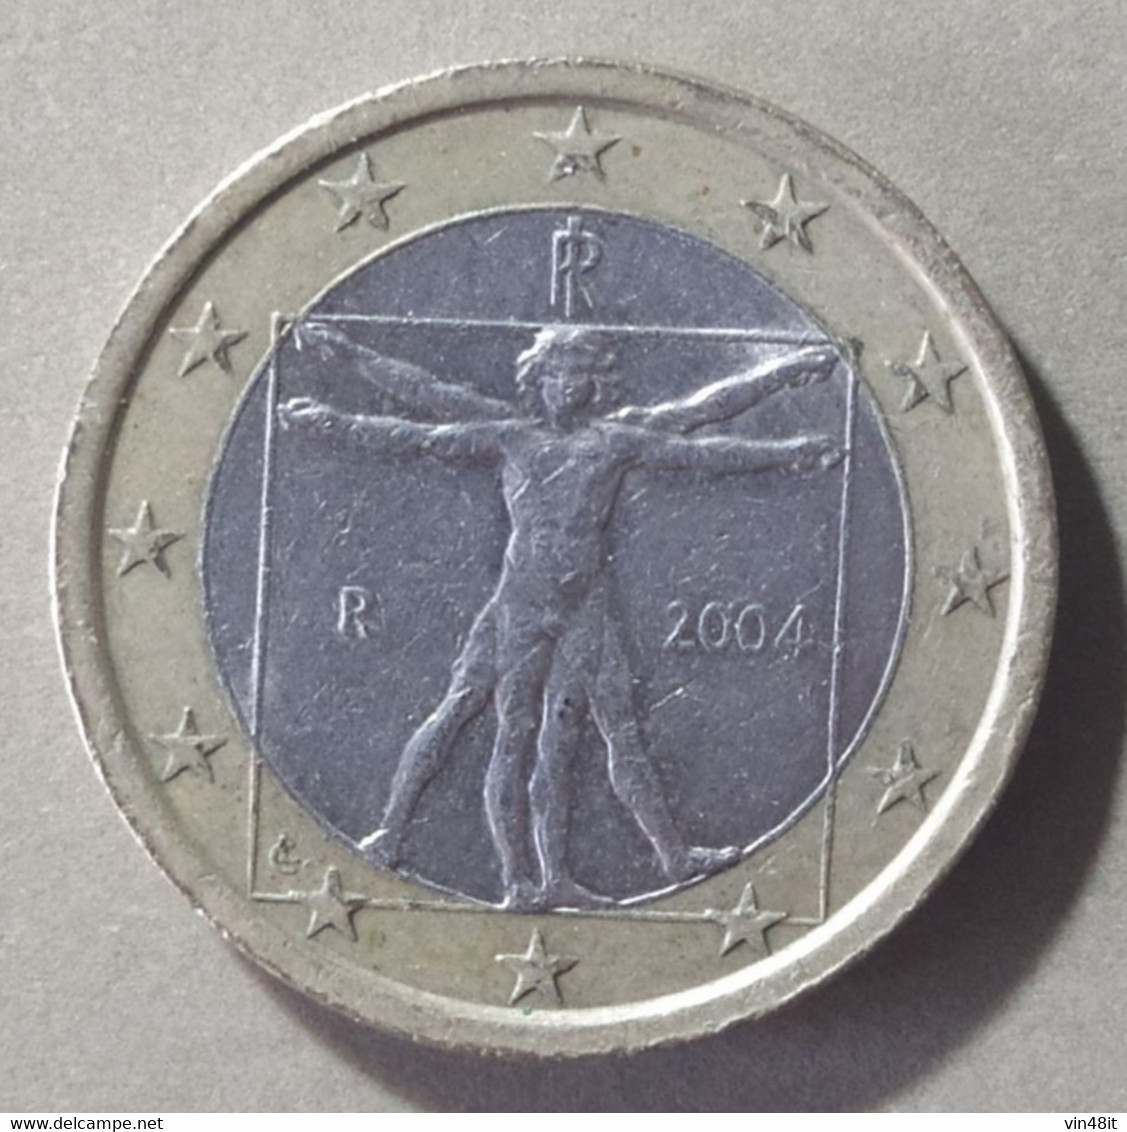 2004 - ITALIA  REPUBBLICA    -  MONETA IN EURO -  DEL VALORE DI 1,00  EURO  - USATA - - Italien